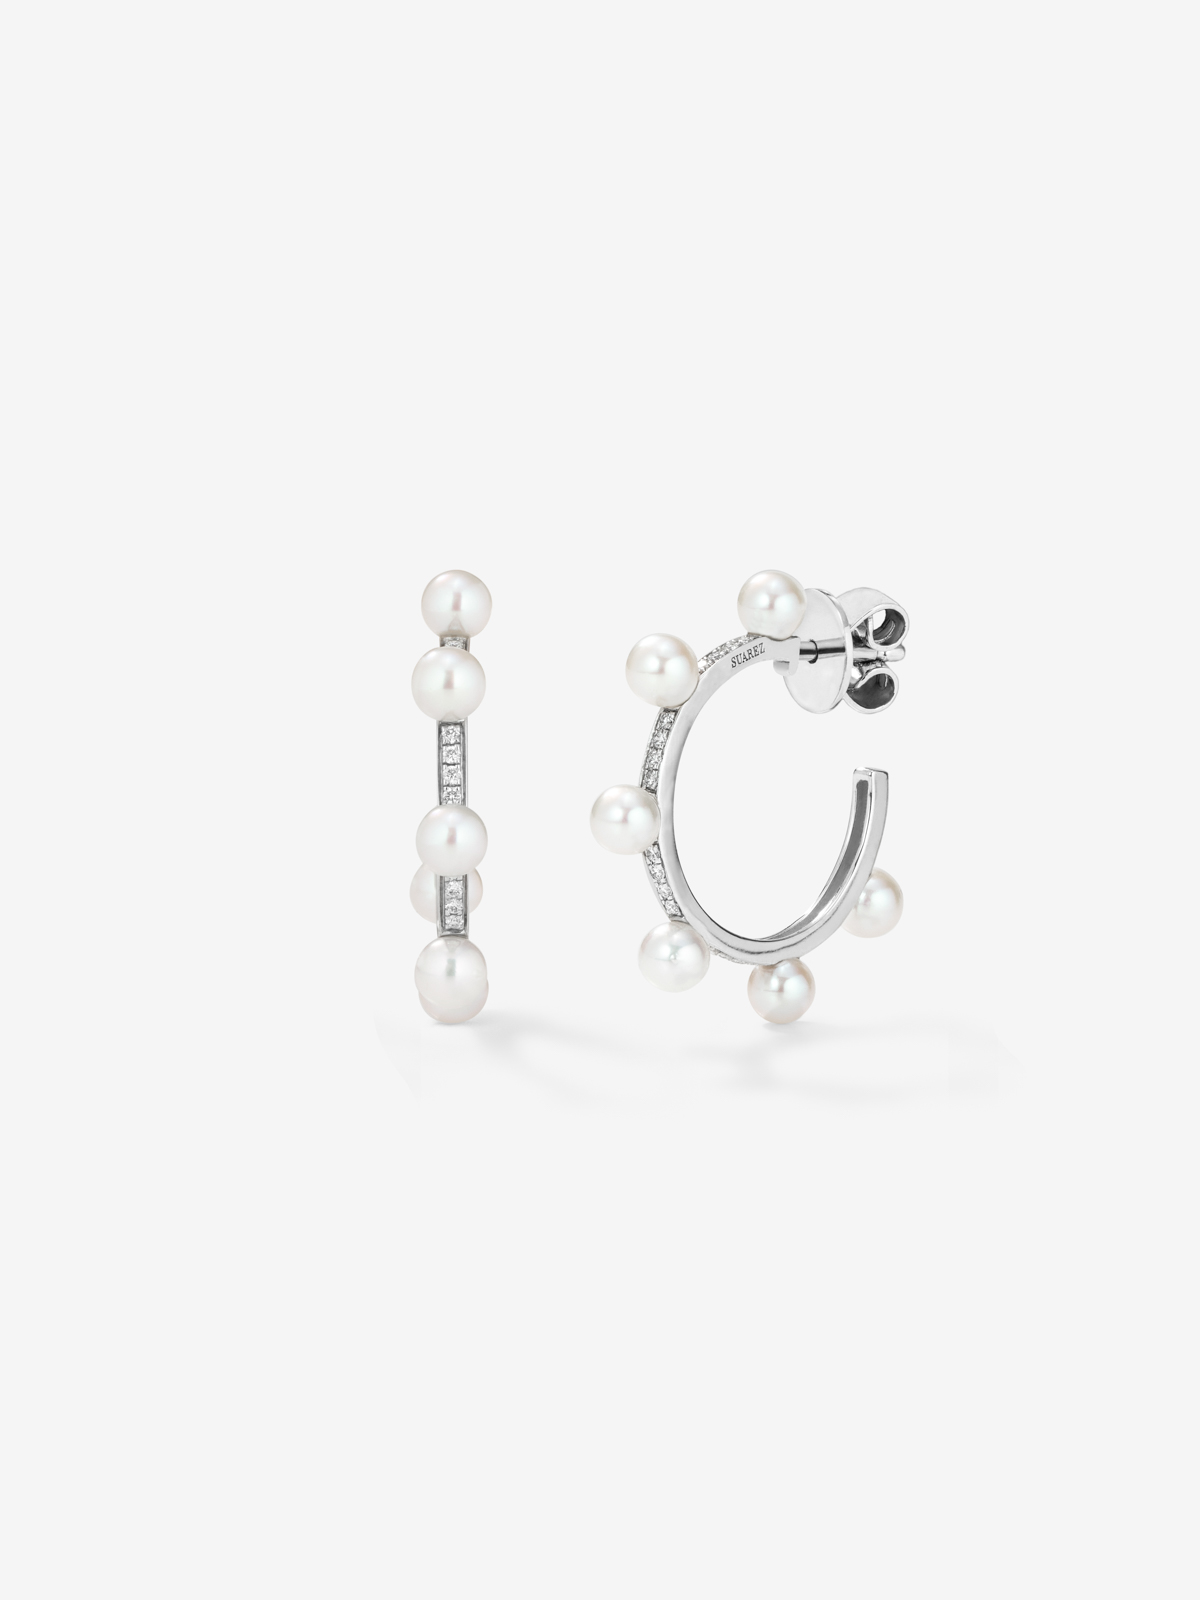 18k white gold hoop earrings with 4mm Akoya pearls